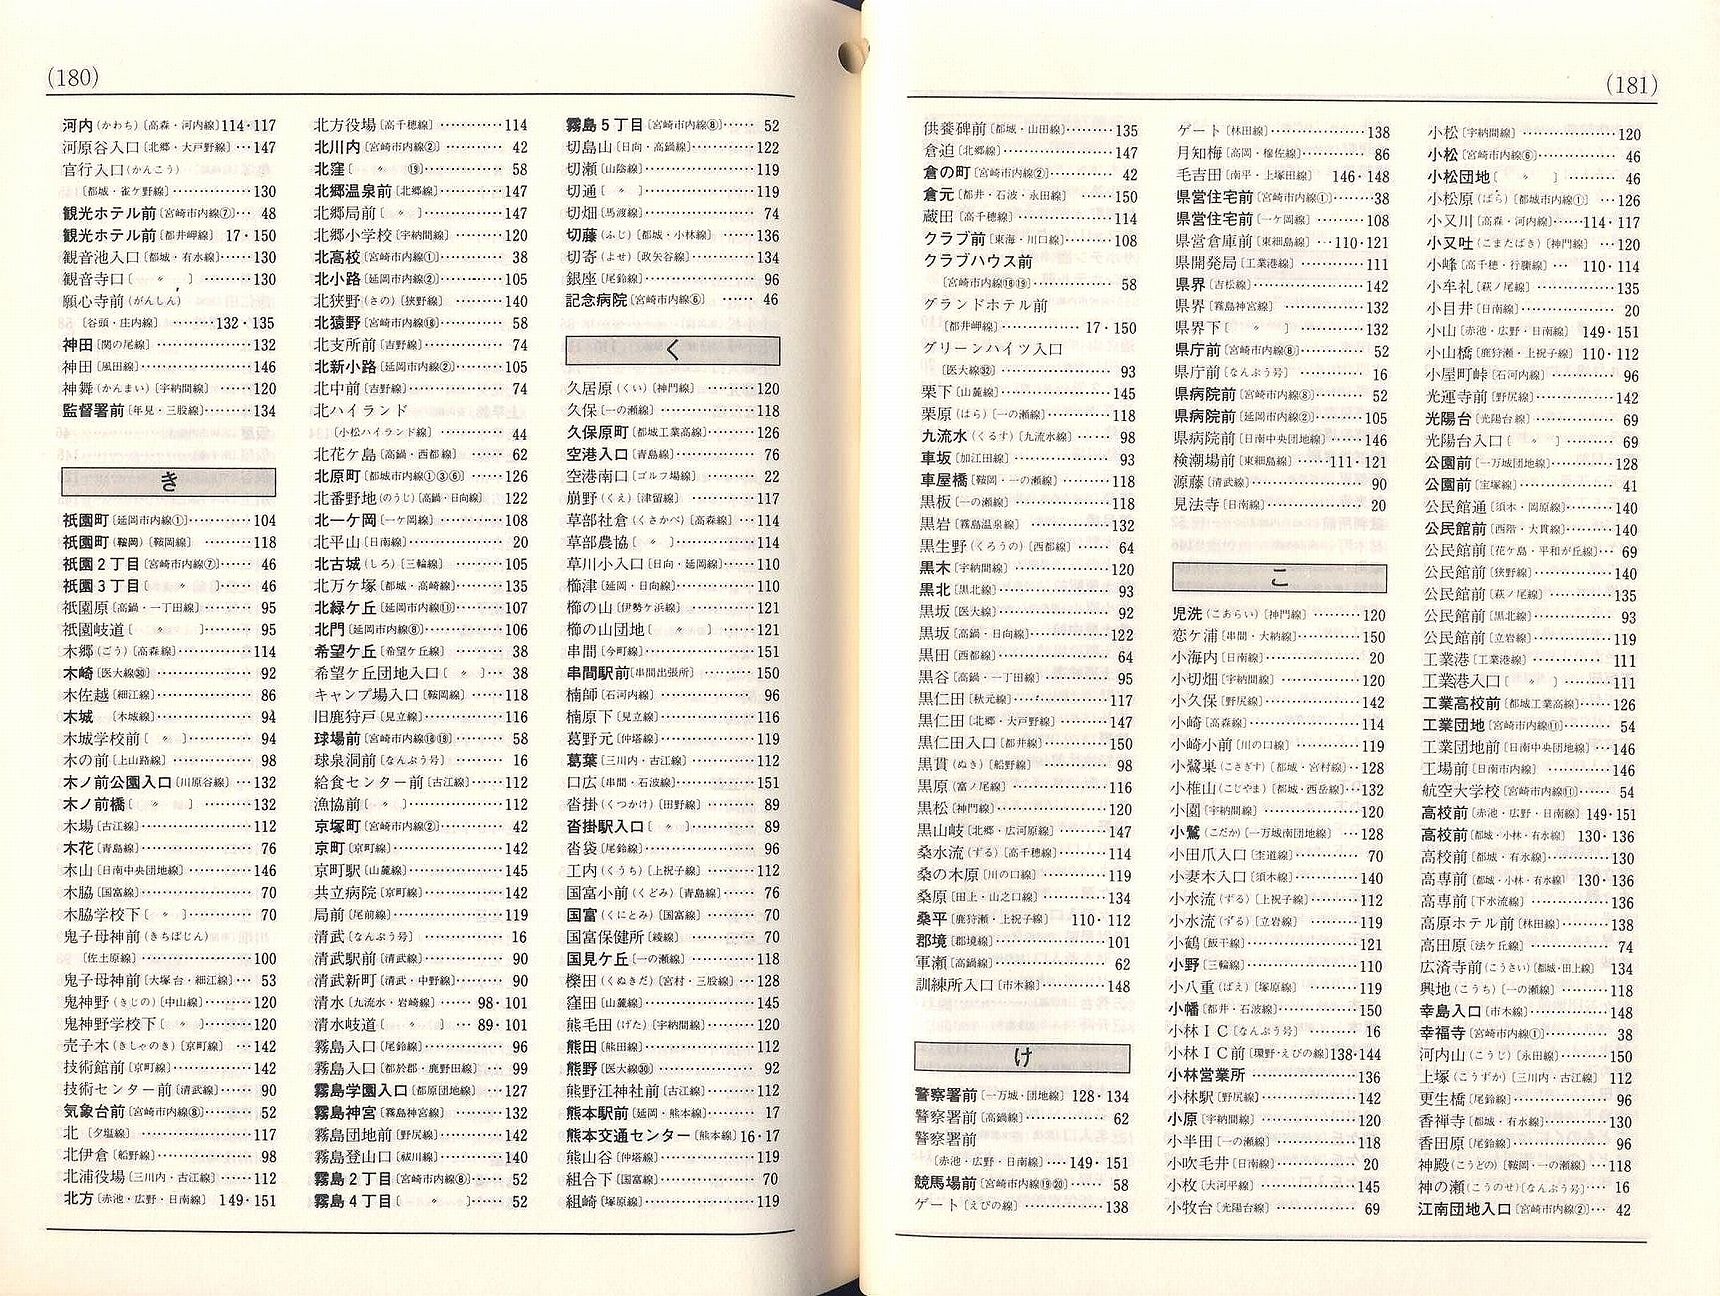 1984-10-01改正_宮崎交通_冊子時刻表_180